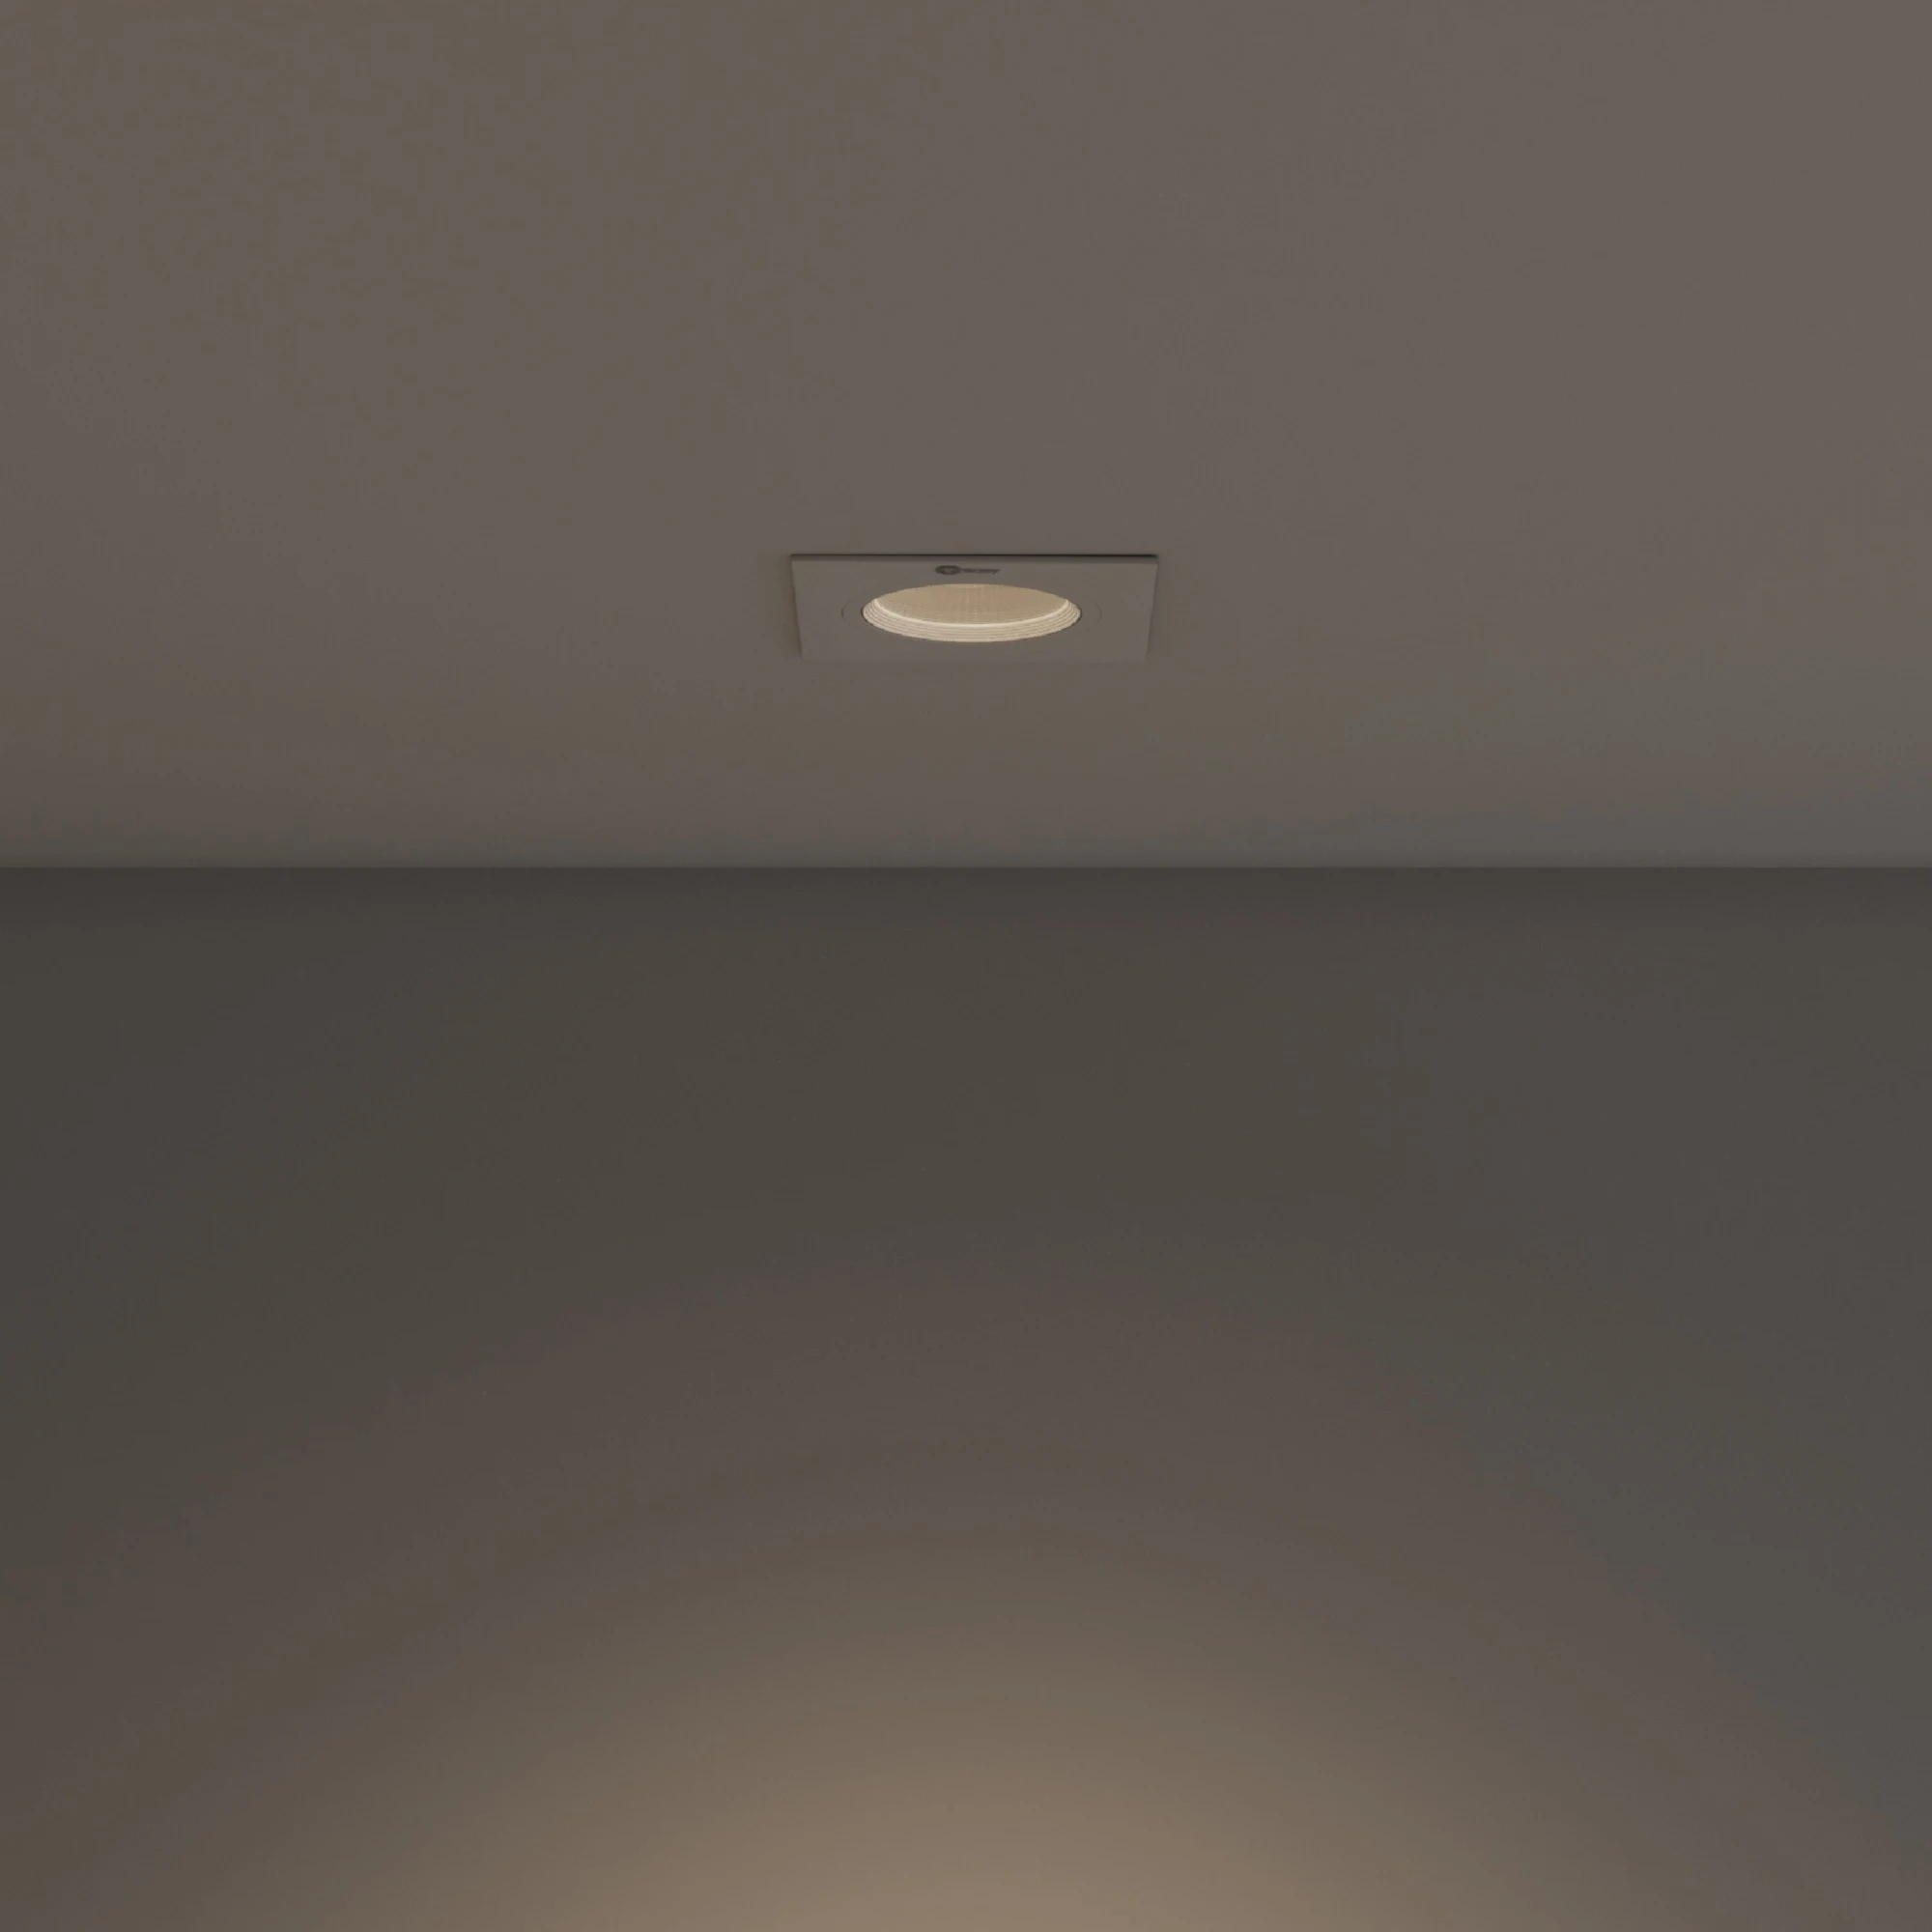 Khoảng cách lắp đặt đèn LED trong nhà bao nhiêu là hợp lý